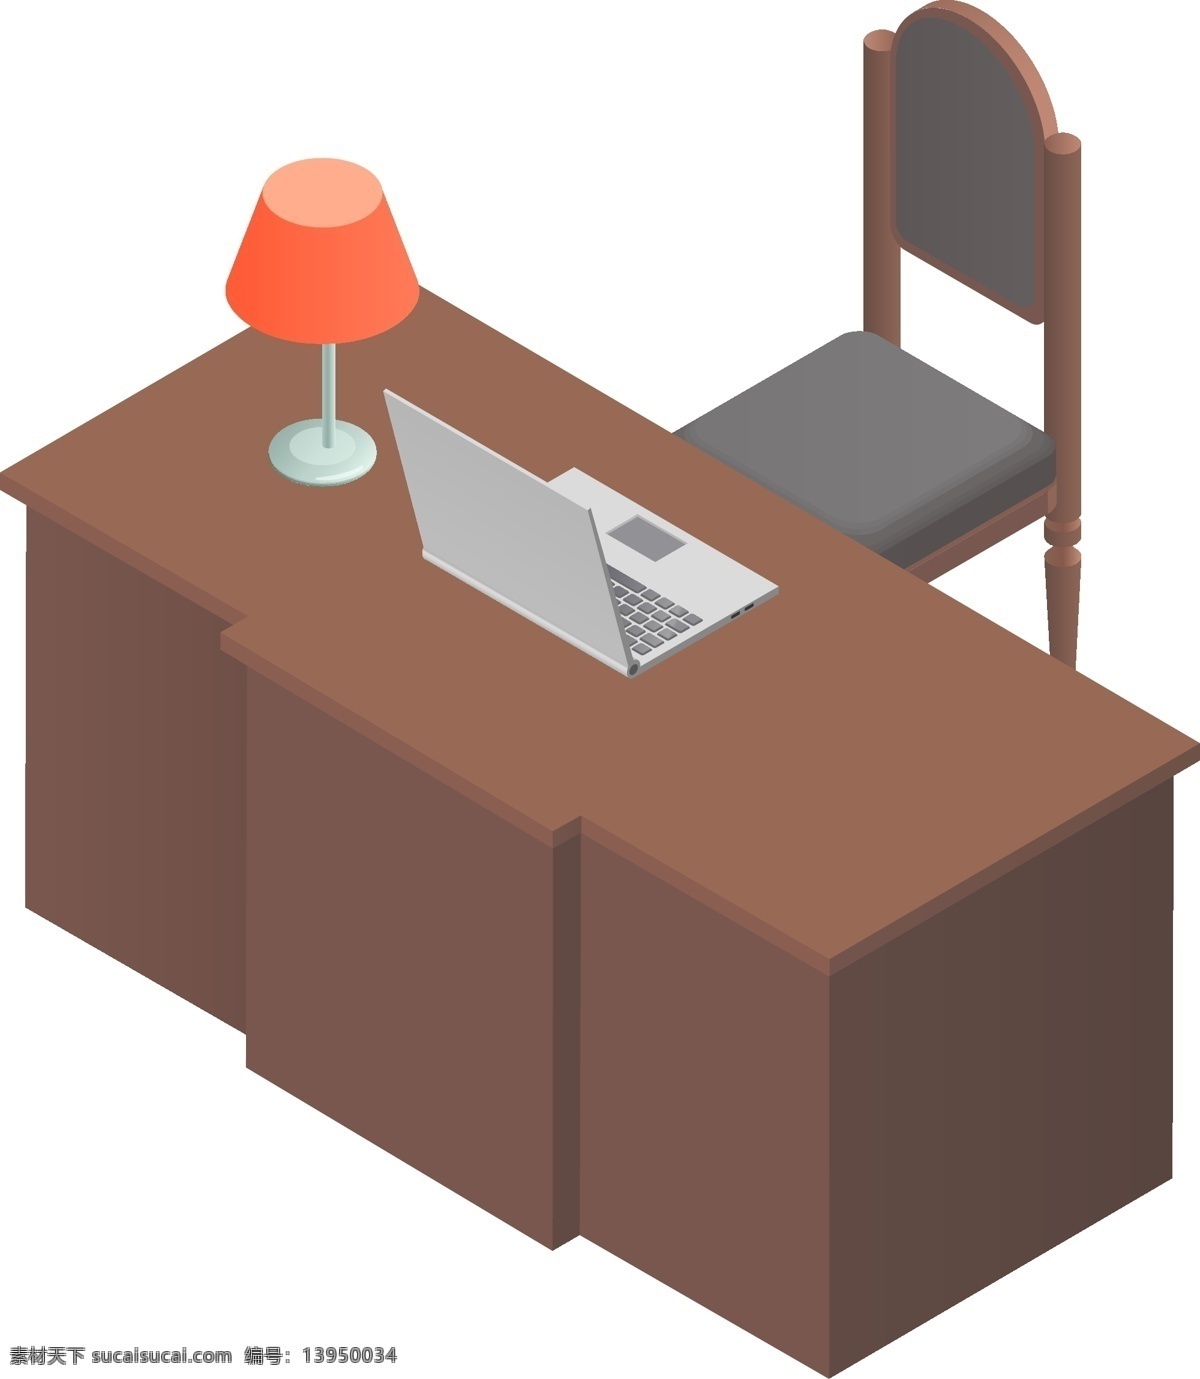 简约 风格 桌椅 元素 商用 生活 休闲 椅子 电脑 笔记本 办公桌 台灯